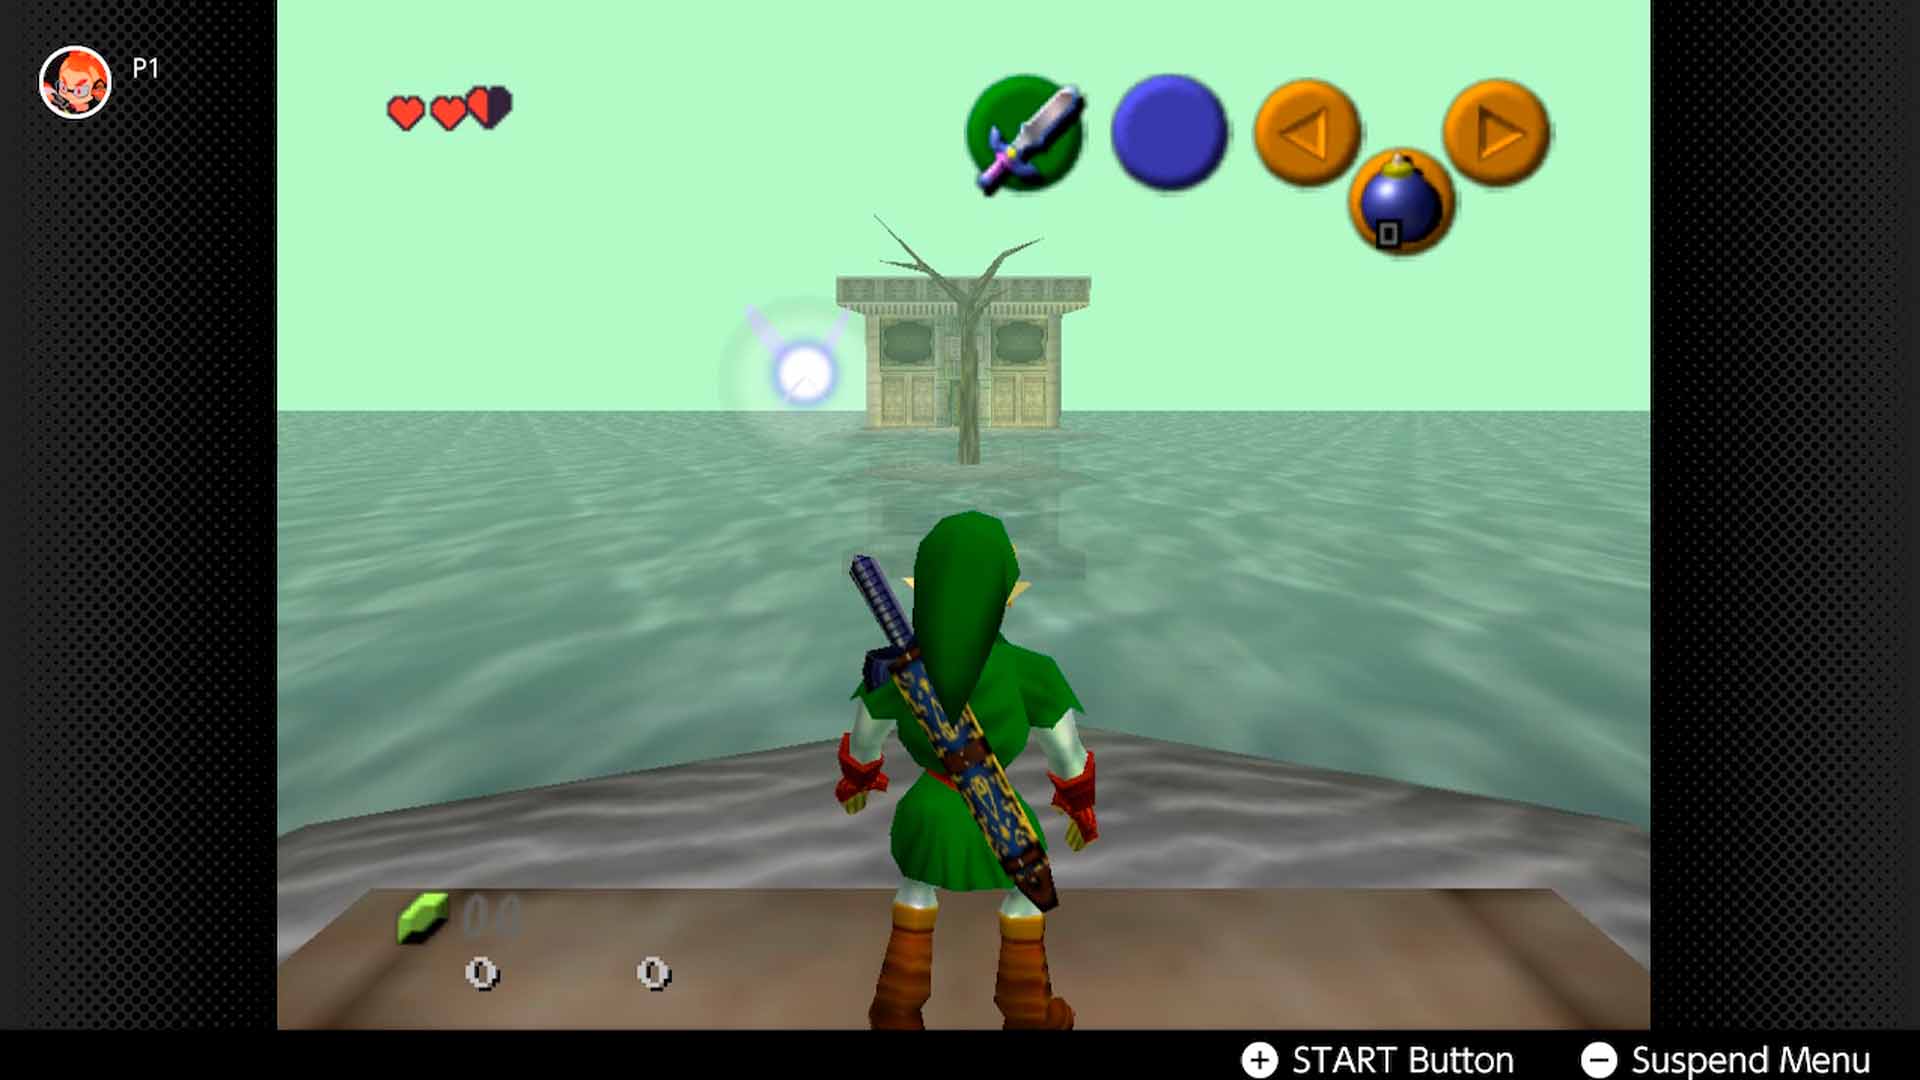 Nintendo Switch Online arregla los desperfectos gráficos de Ocarina of Time